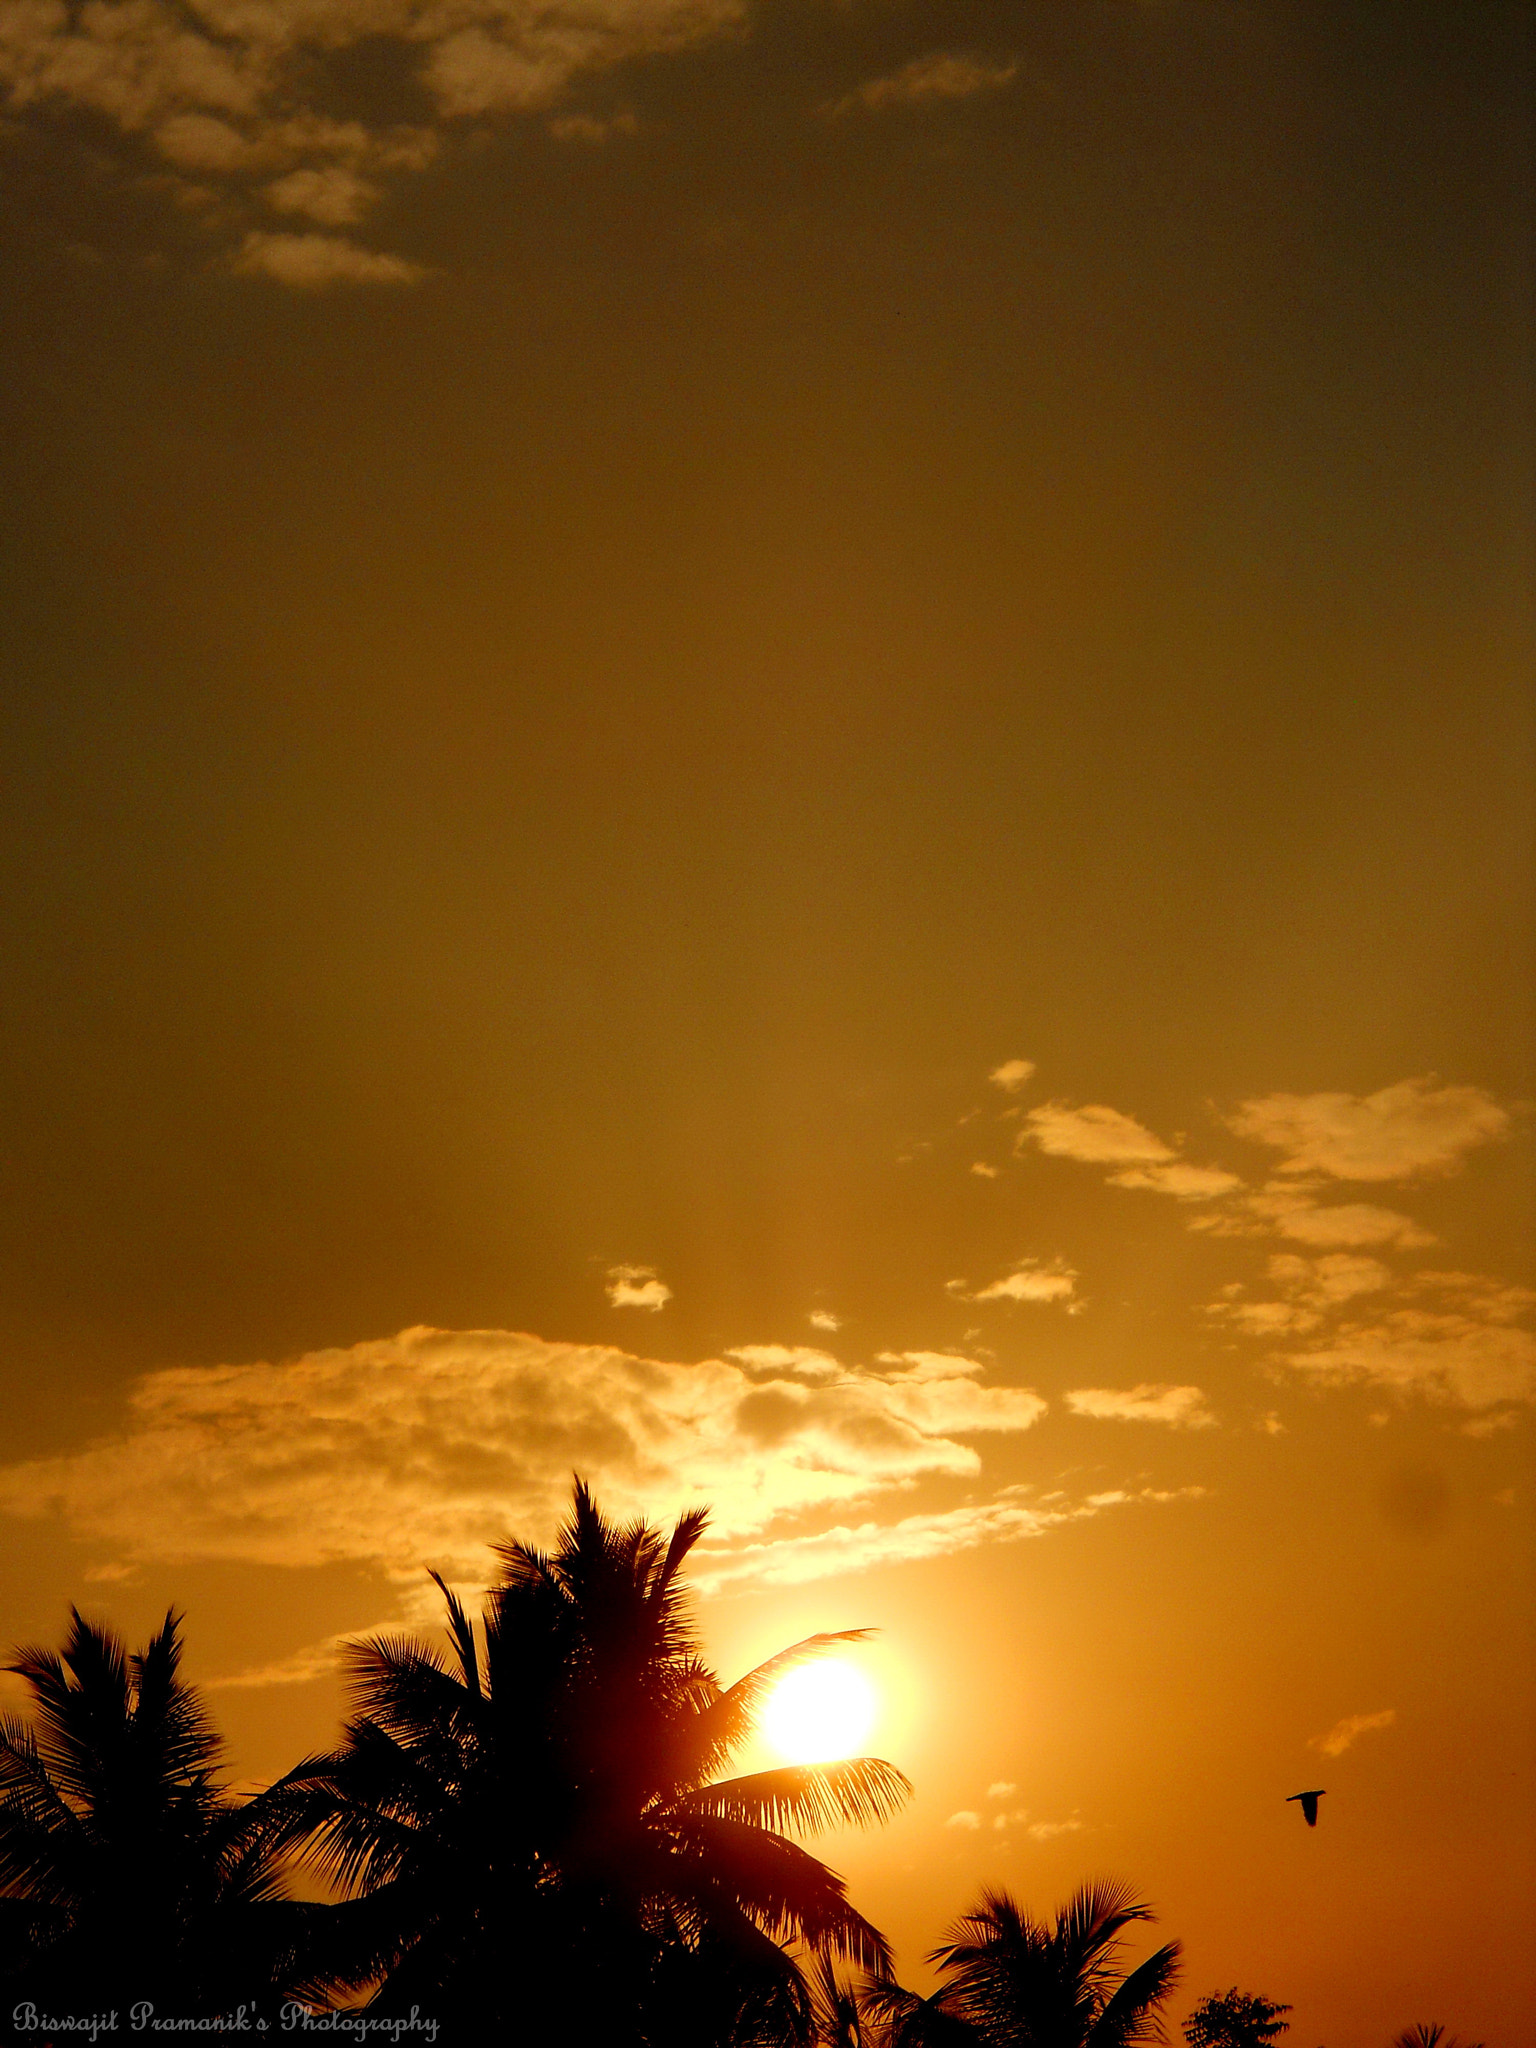 Nikon Coolpix L22 sample photo. Beautiful sunset photography